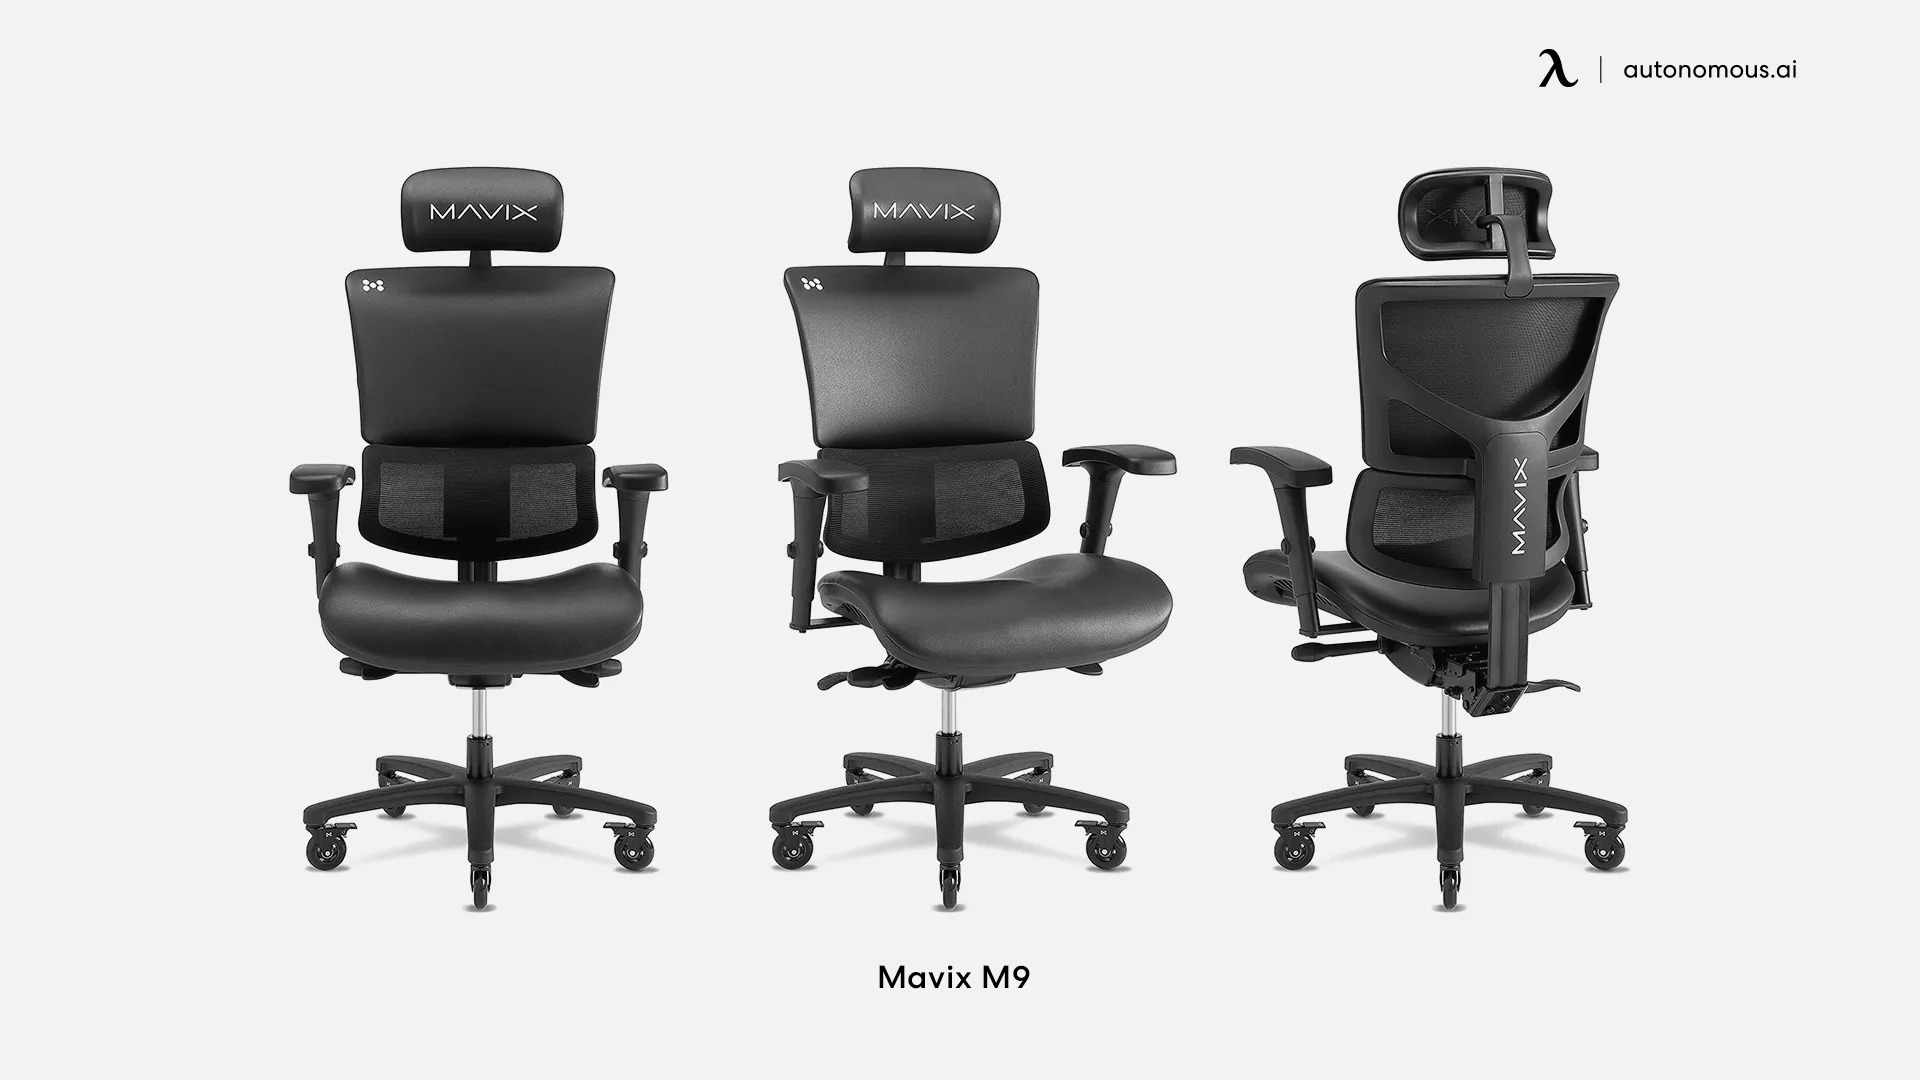 Mavix M9 luxury office chair